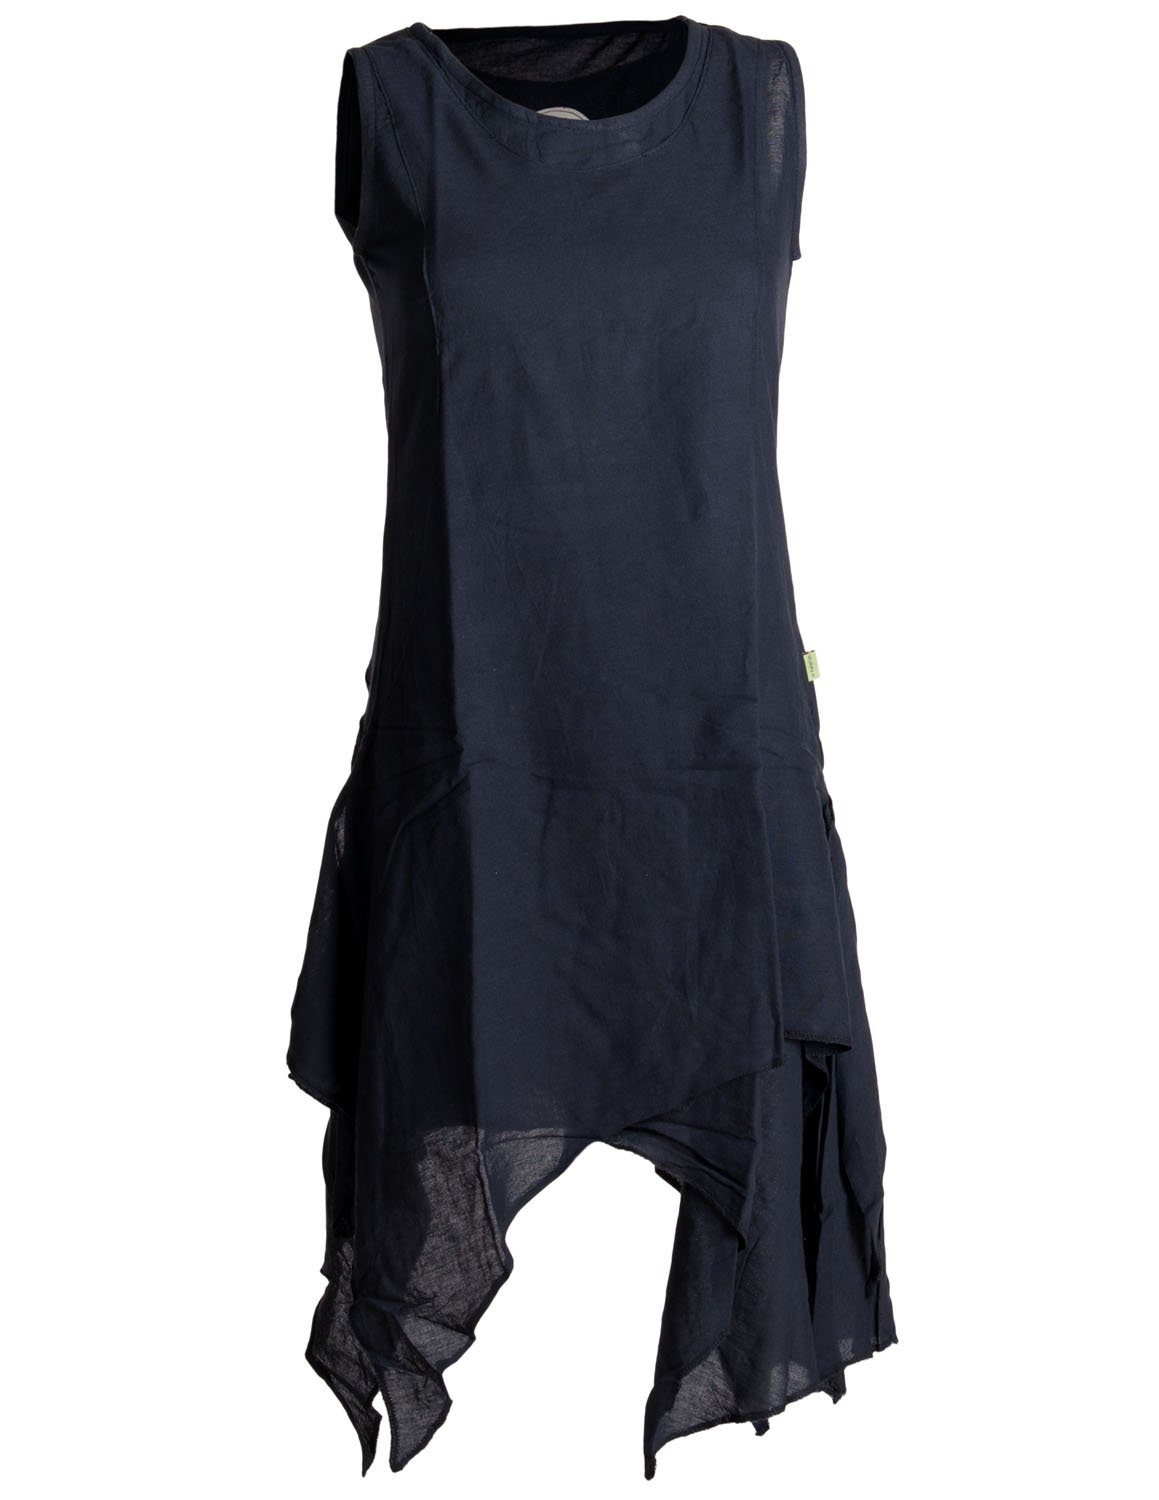 Vishes Style schwarzuni Goa, Hippie handgewebte Kleid Boho, Baumwolle Lagenlook Sommerkleid Ärmelloses